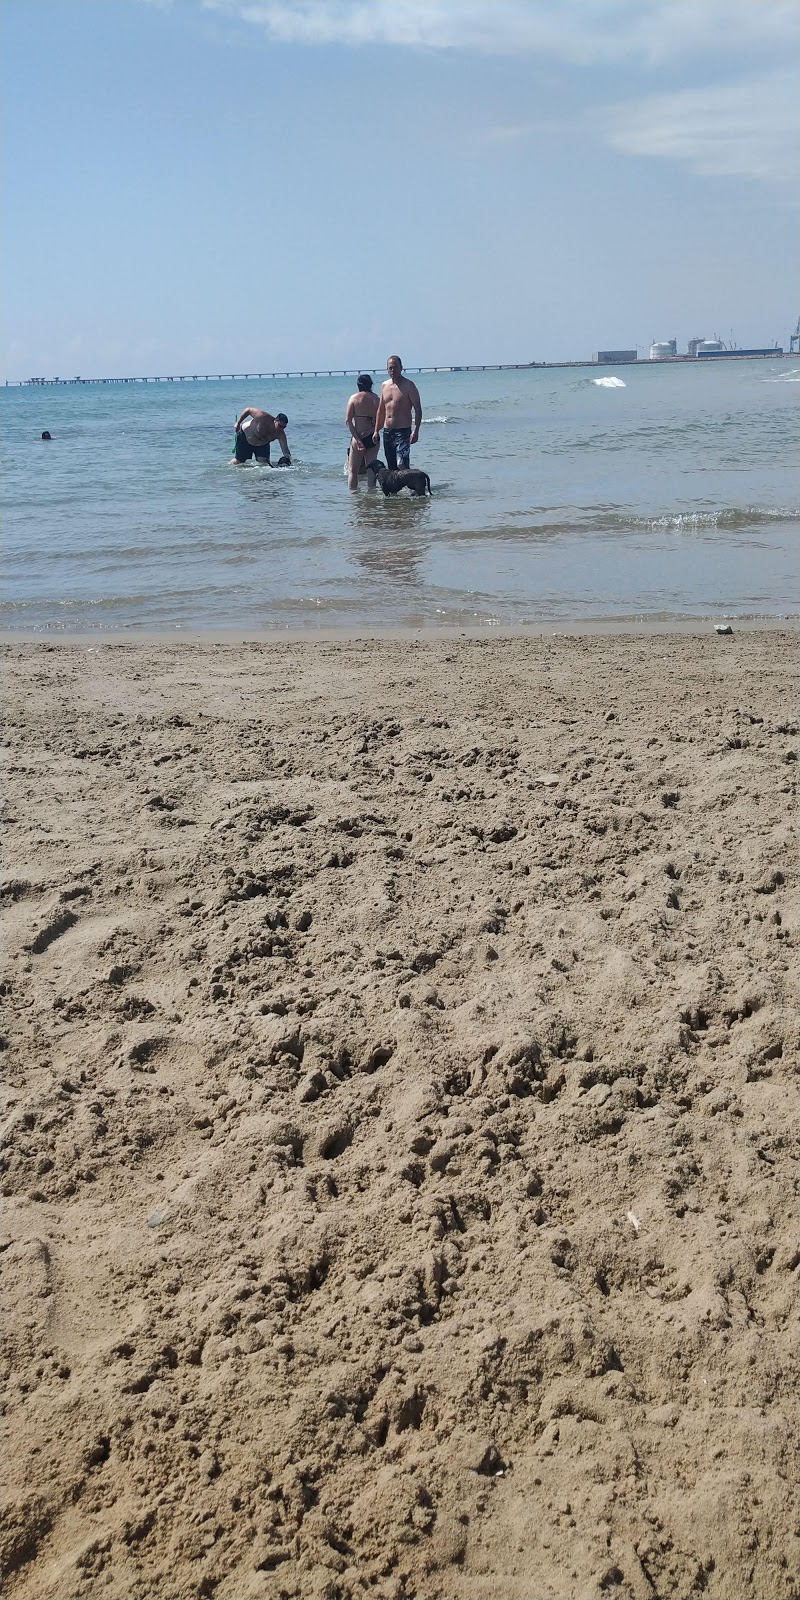 Playa de Canet'in fotoğrafı kahverengi kum yüzey ile